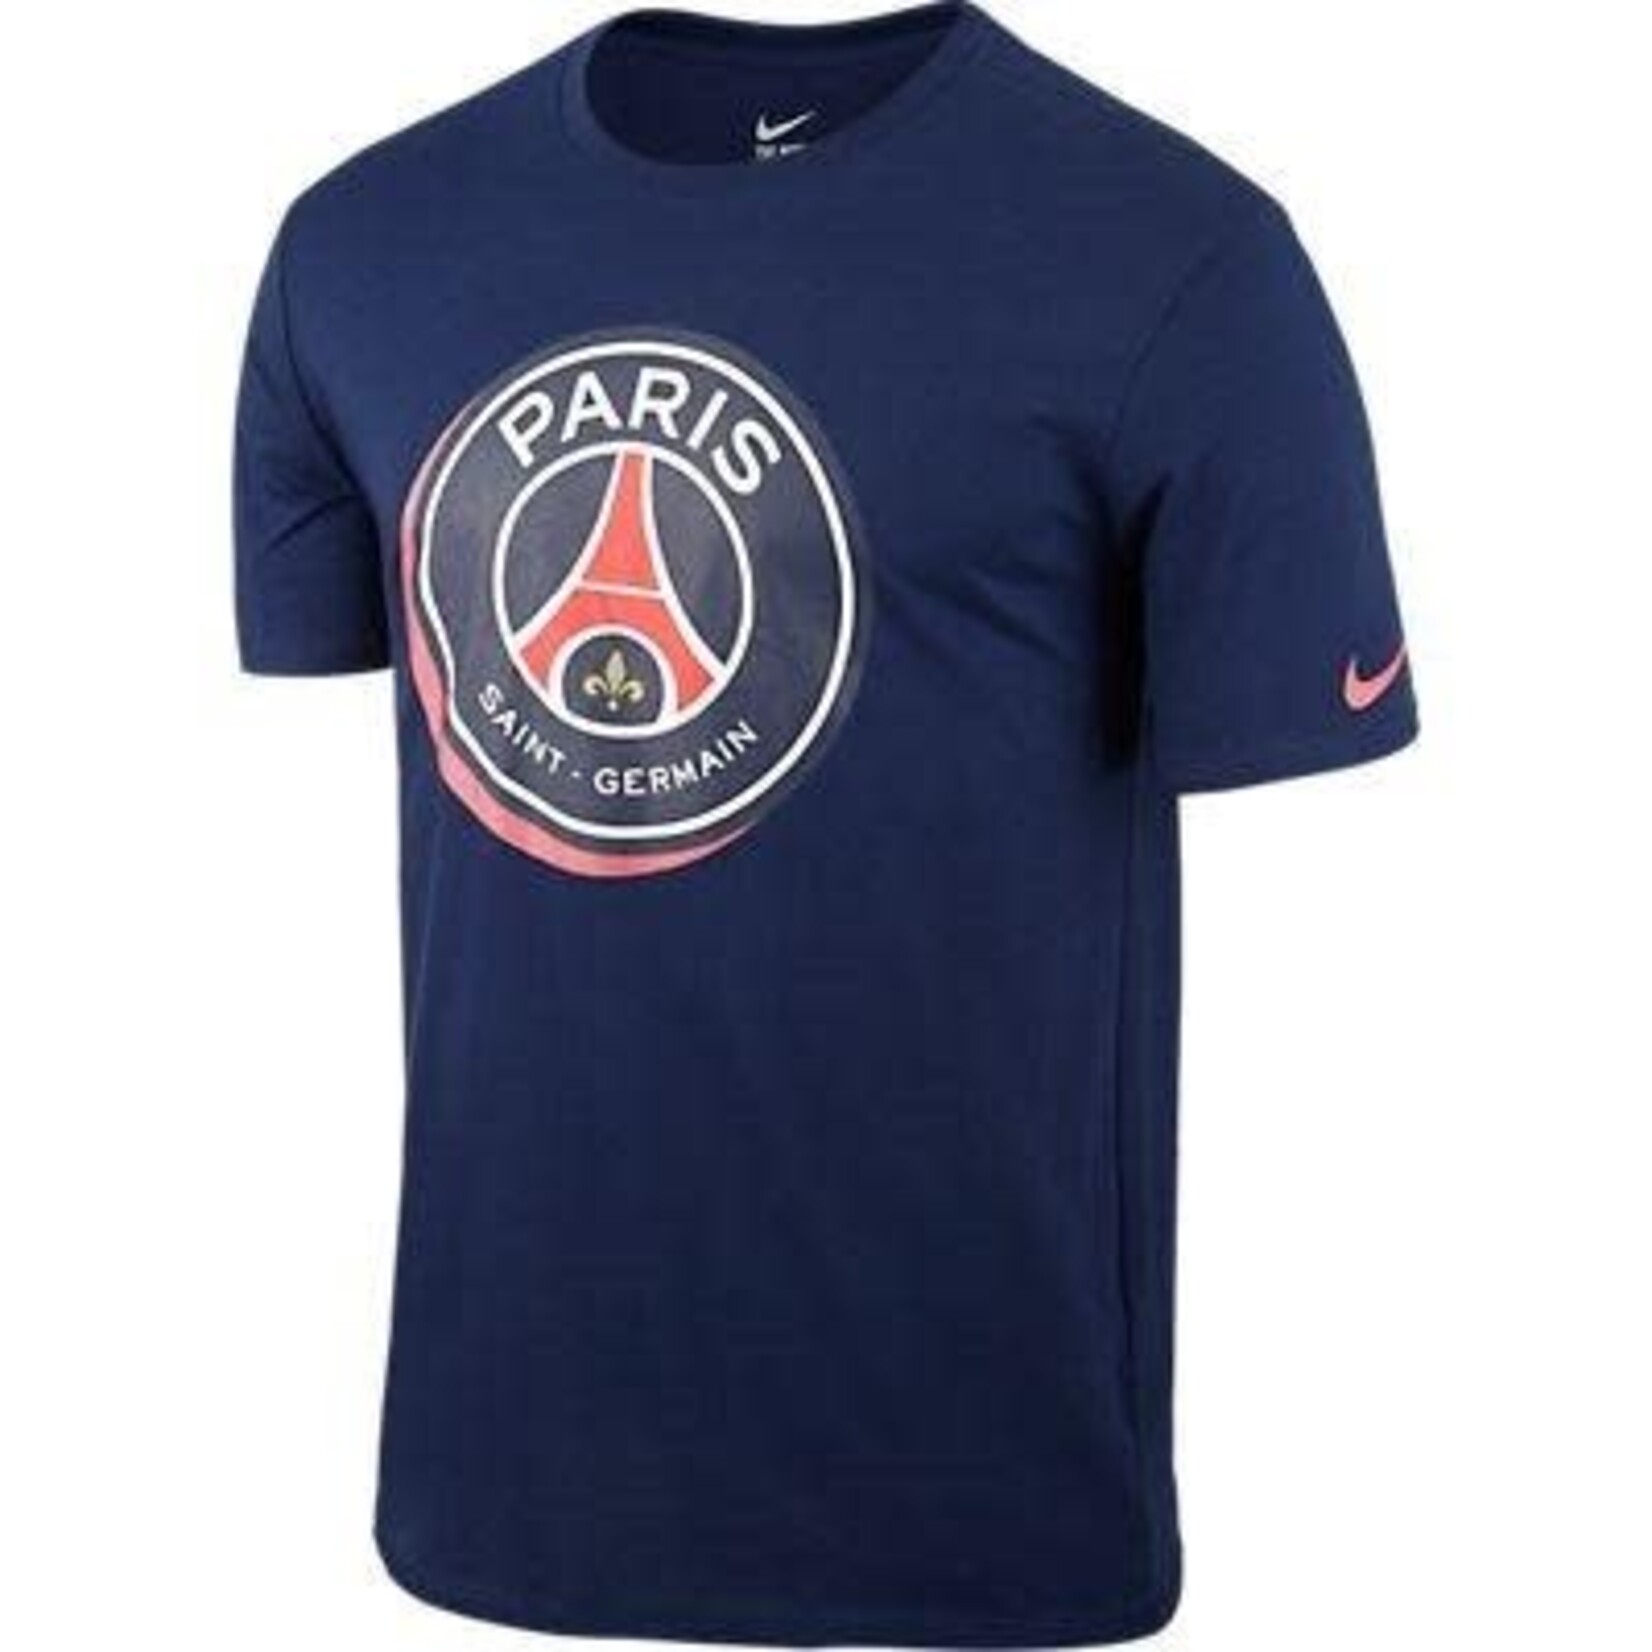 Nike Paris Saint-Germain T-Shirt Navy